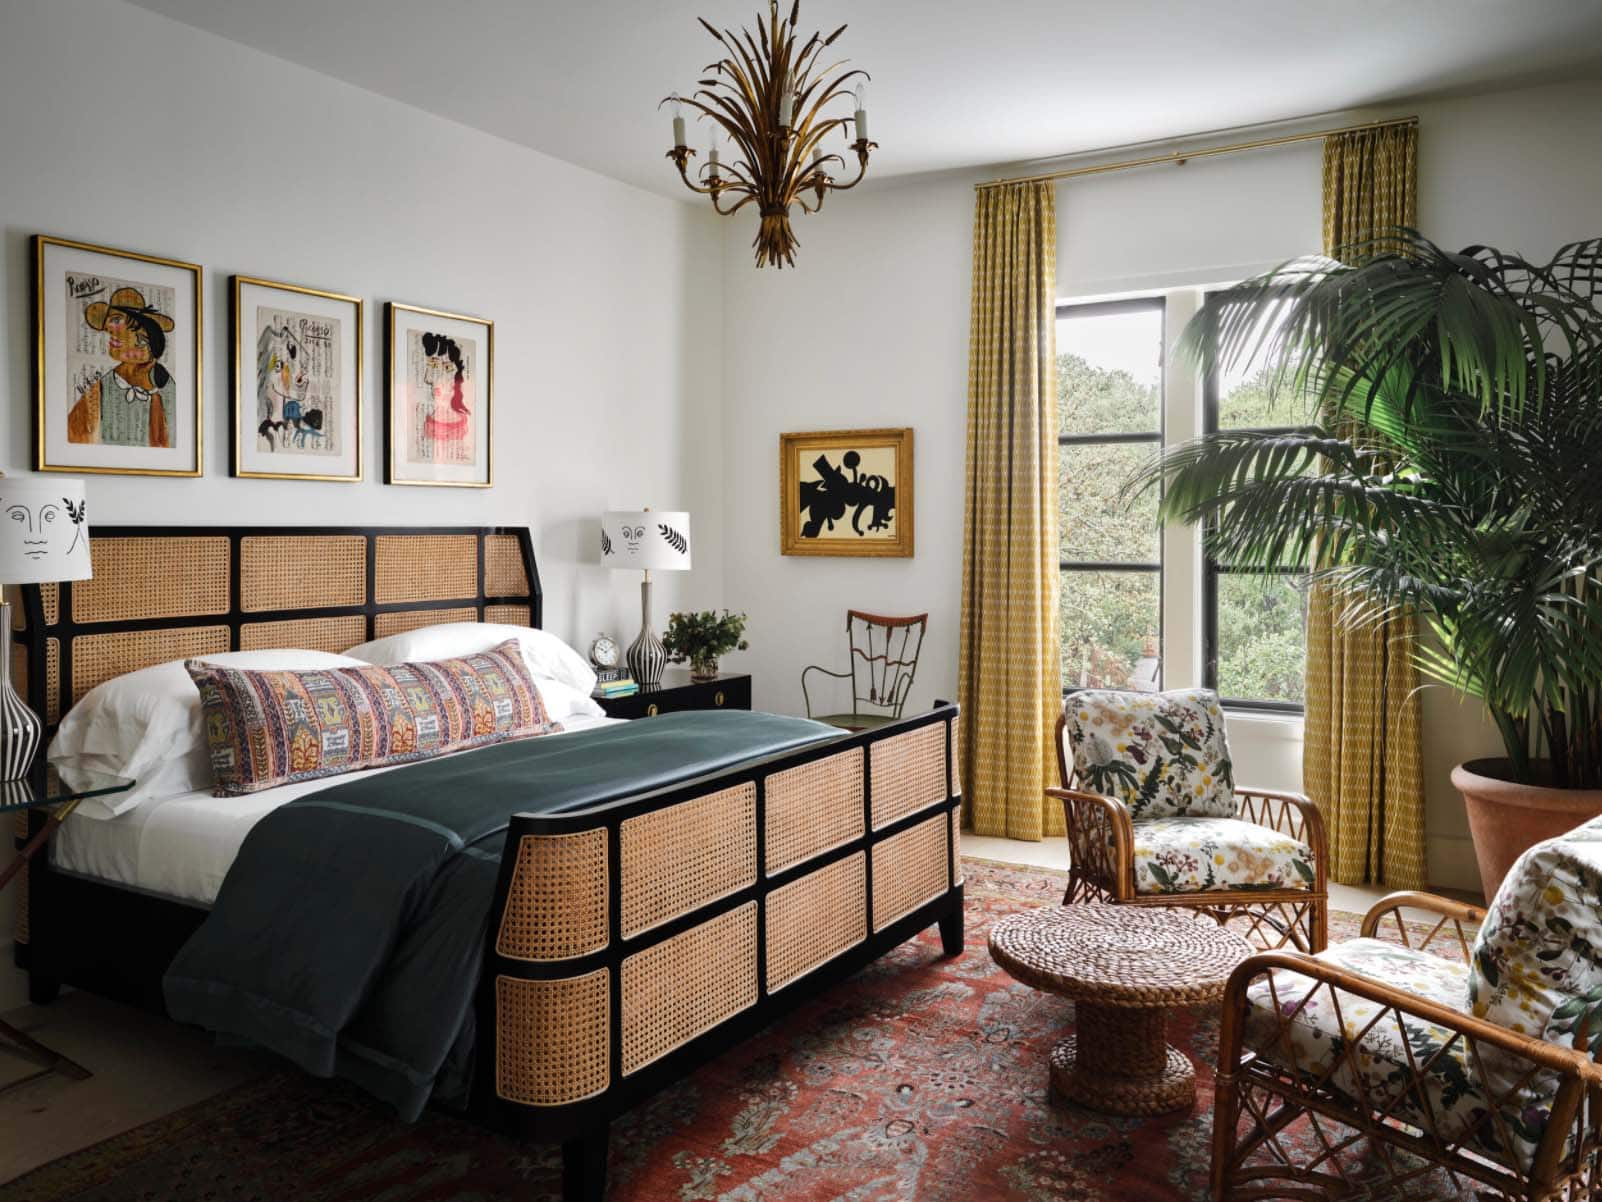 fern-santini-bedroom-for-color-trends-blog-post